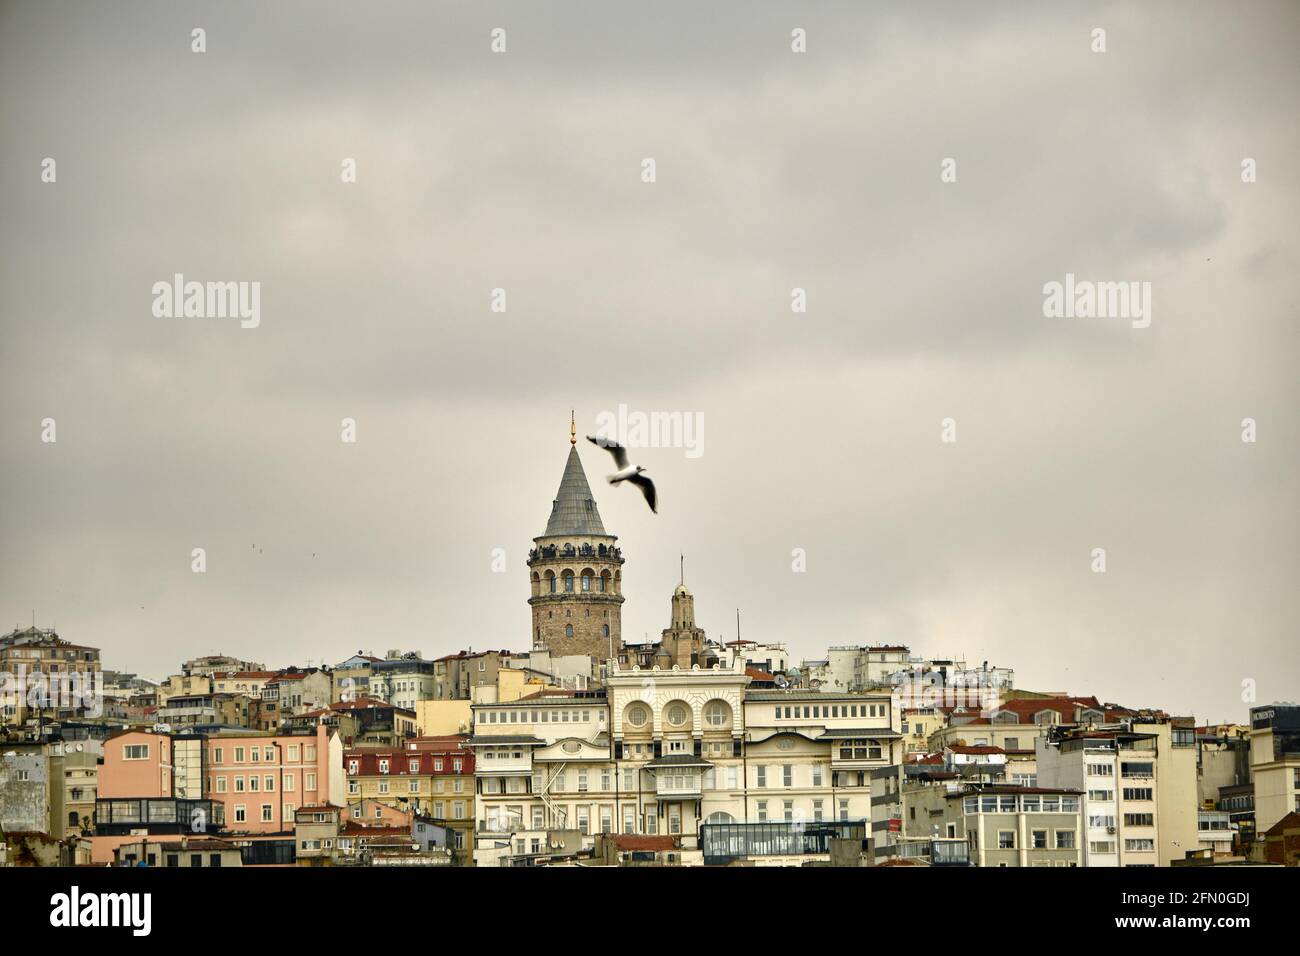 Der berühmte galata-Turm von istanbul wurde vom istanbuler bosporus fotografiert. Galata Tower während des bewölkten Himmels und regnerischen Tages mit einer Möwe fliegen Stockfoto